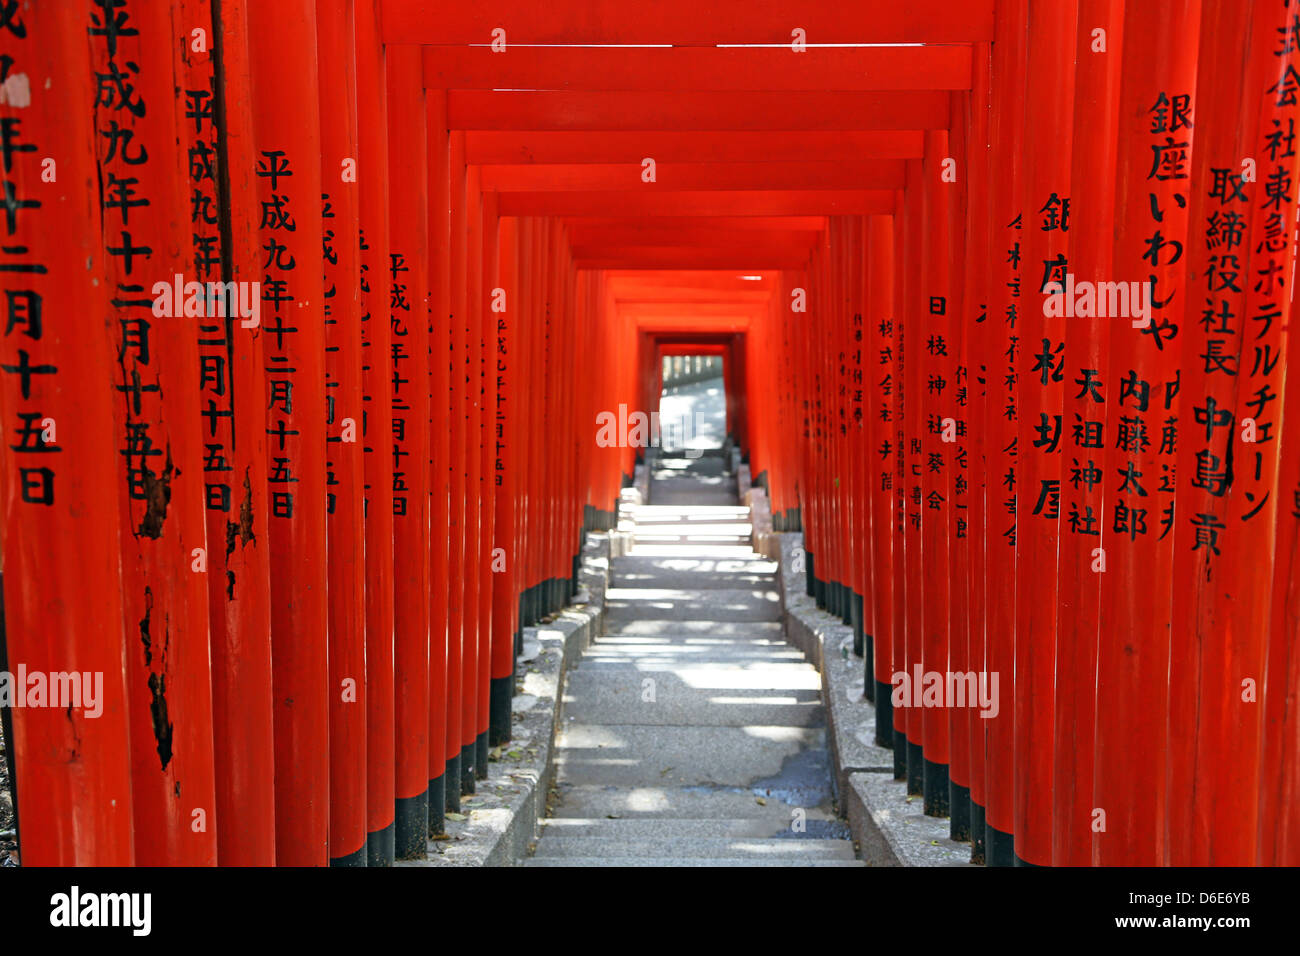 Red Torii gates e passaggi per l'ingresso alla Hie-Jinja sacrario scintoista di Tokyo, Giappone Foto Stock